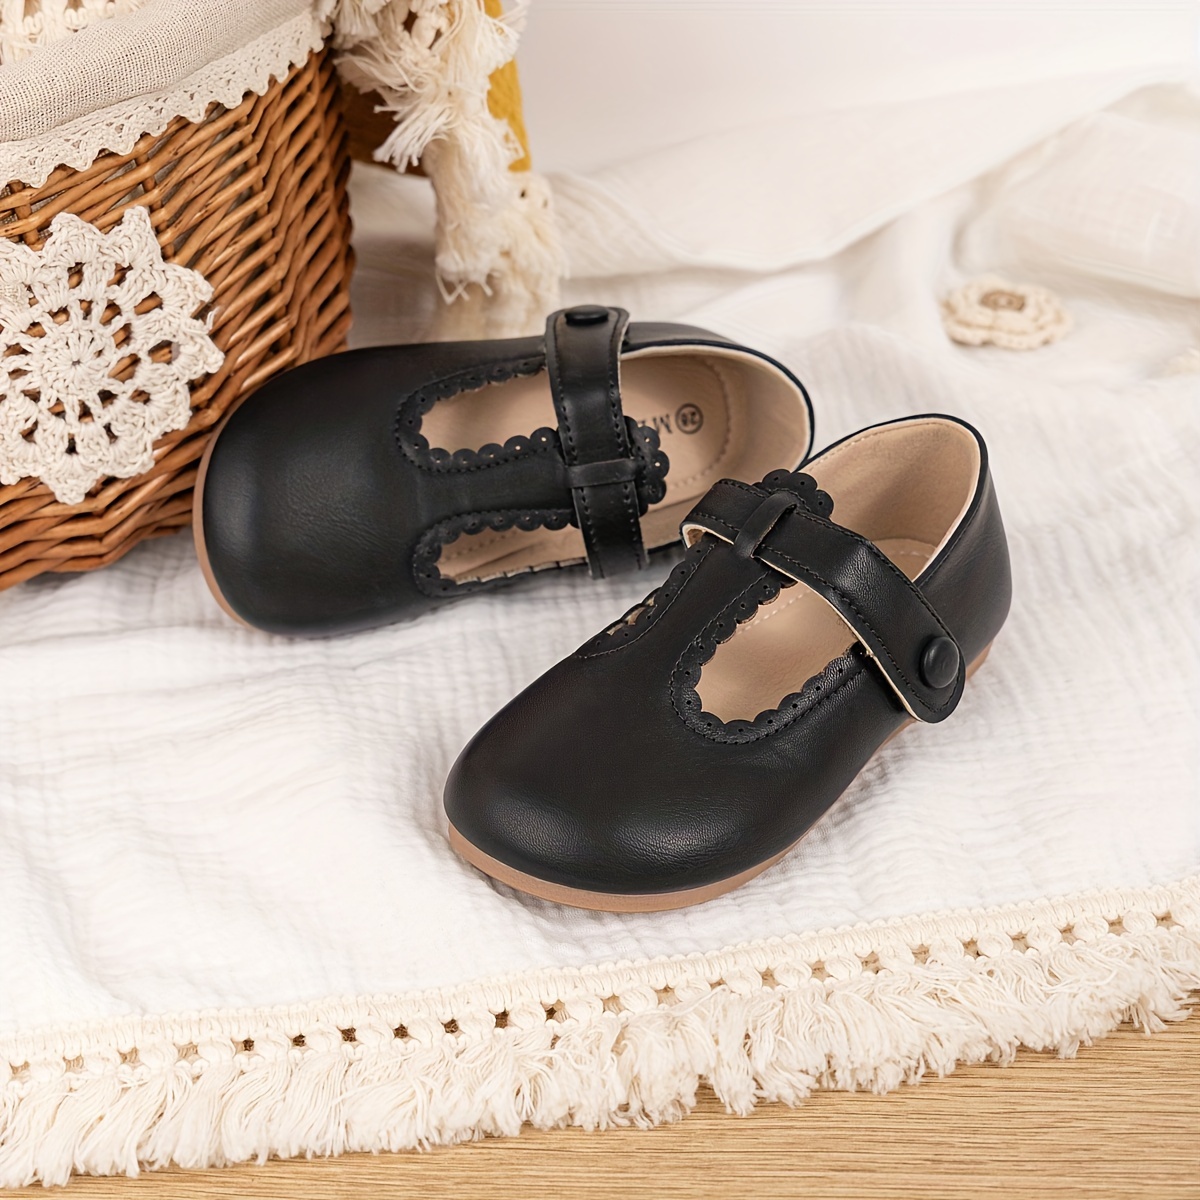 Collants Mary Jane pour bébé et toute-petite fille avec aspect chaussure  0-6 m, 6-12 m, 12-24 m Semelles antidérapantes Coton doux -  France